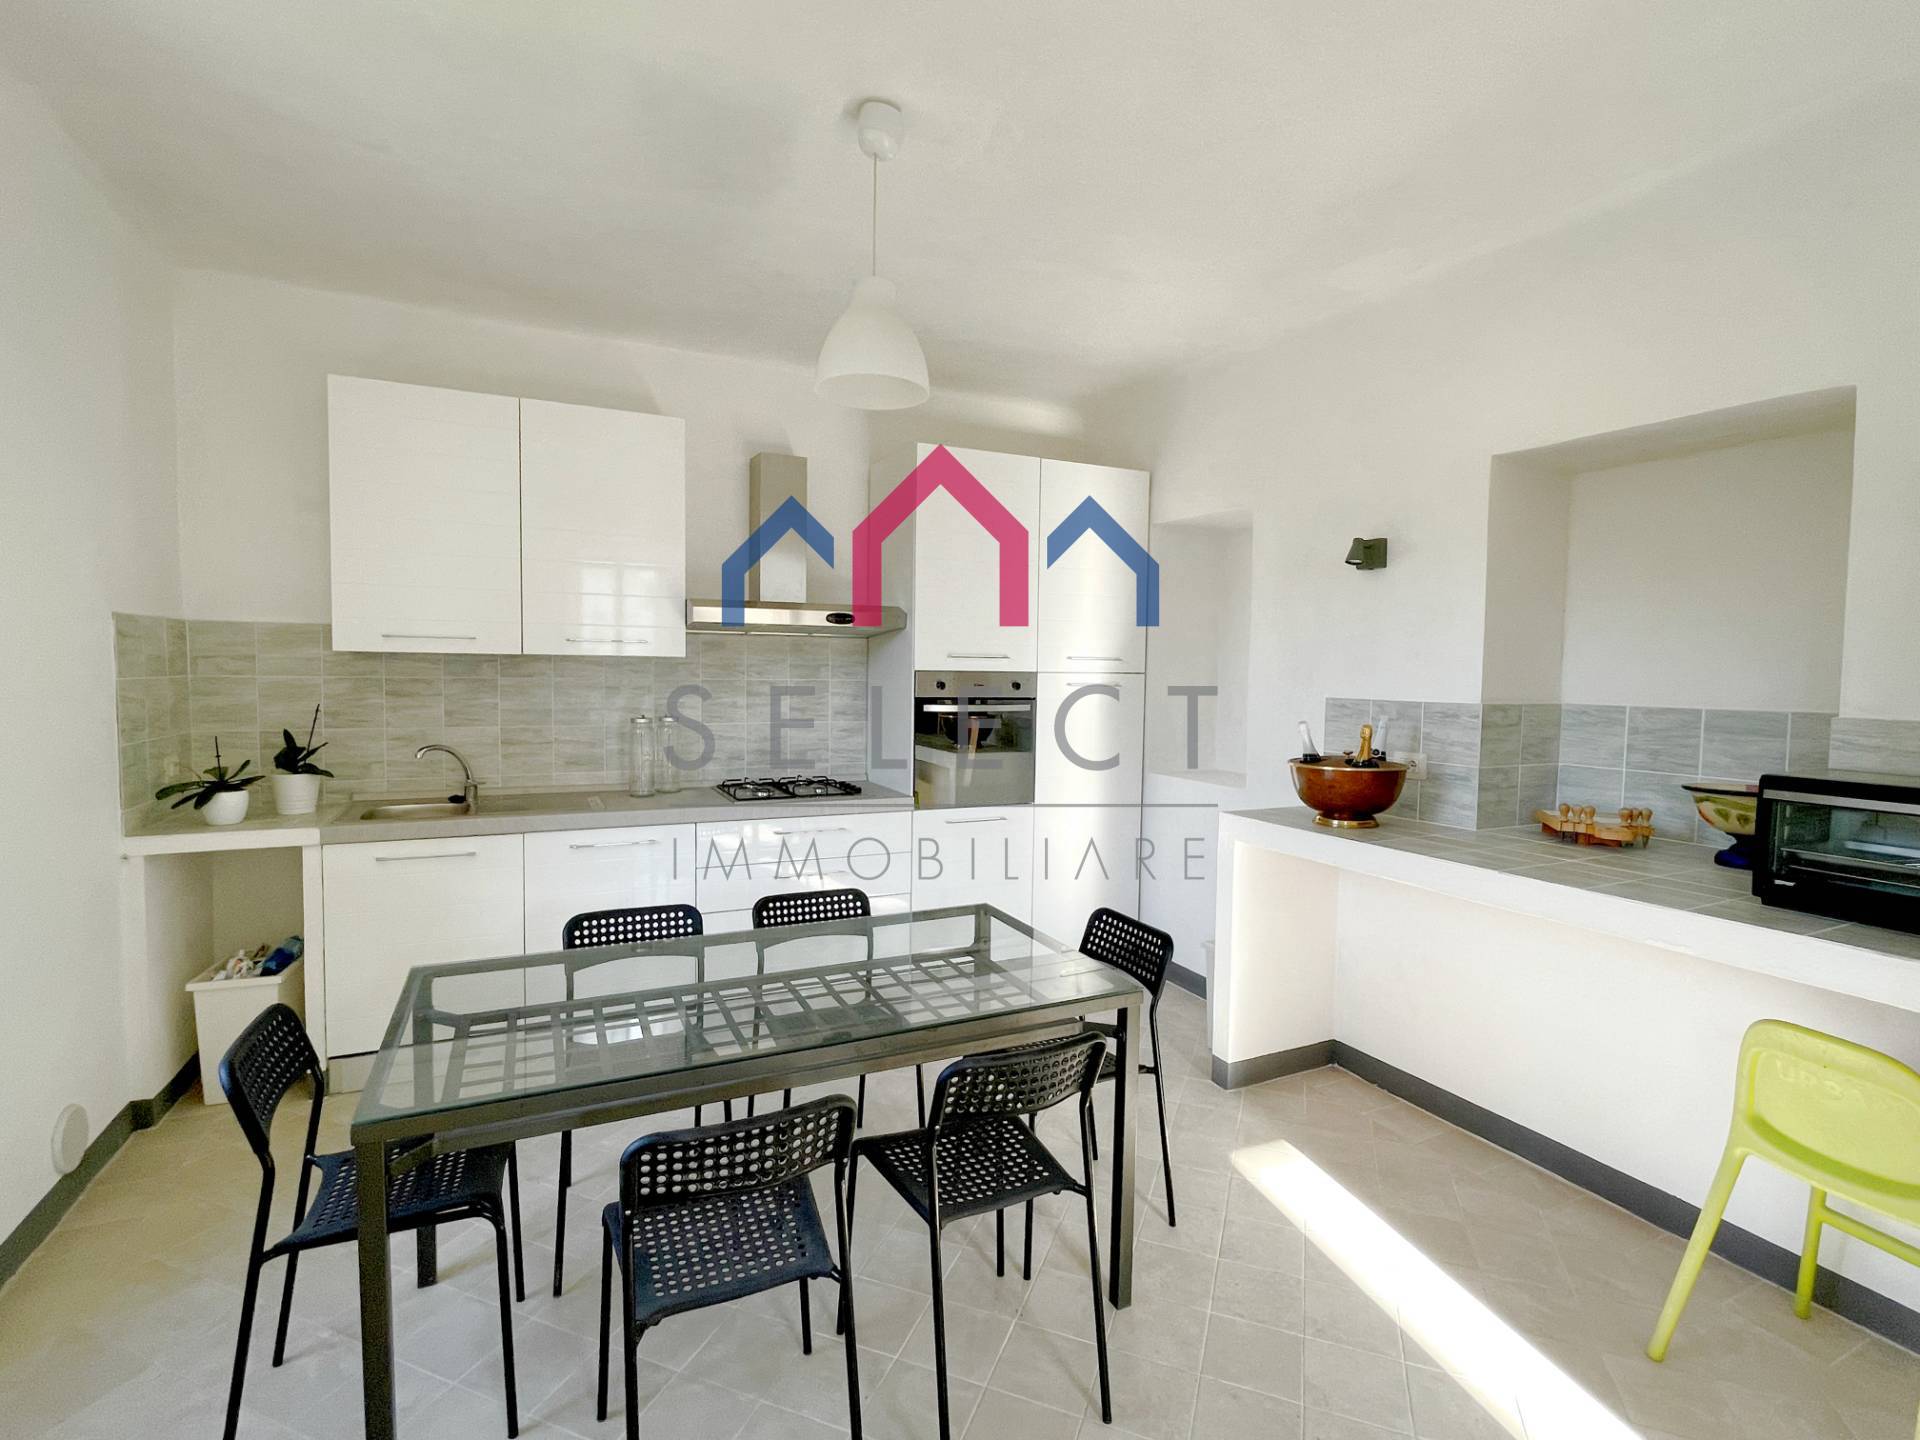 Appartamento in vendita a Borgo a Mozzano, 6 locali, zona enti, prezzo € 158.000 | PortaleAgenzieImmobiliari.it